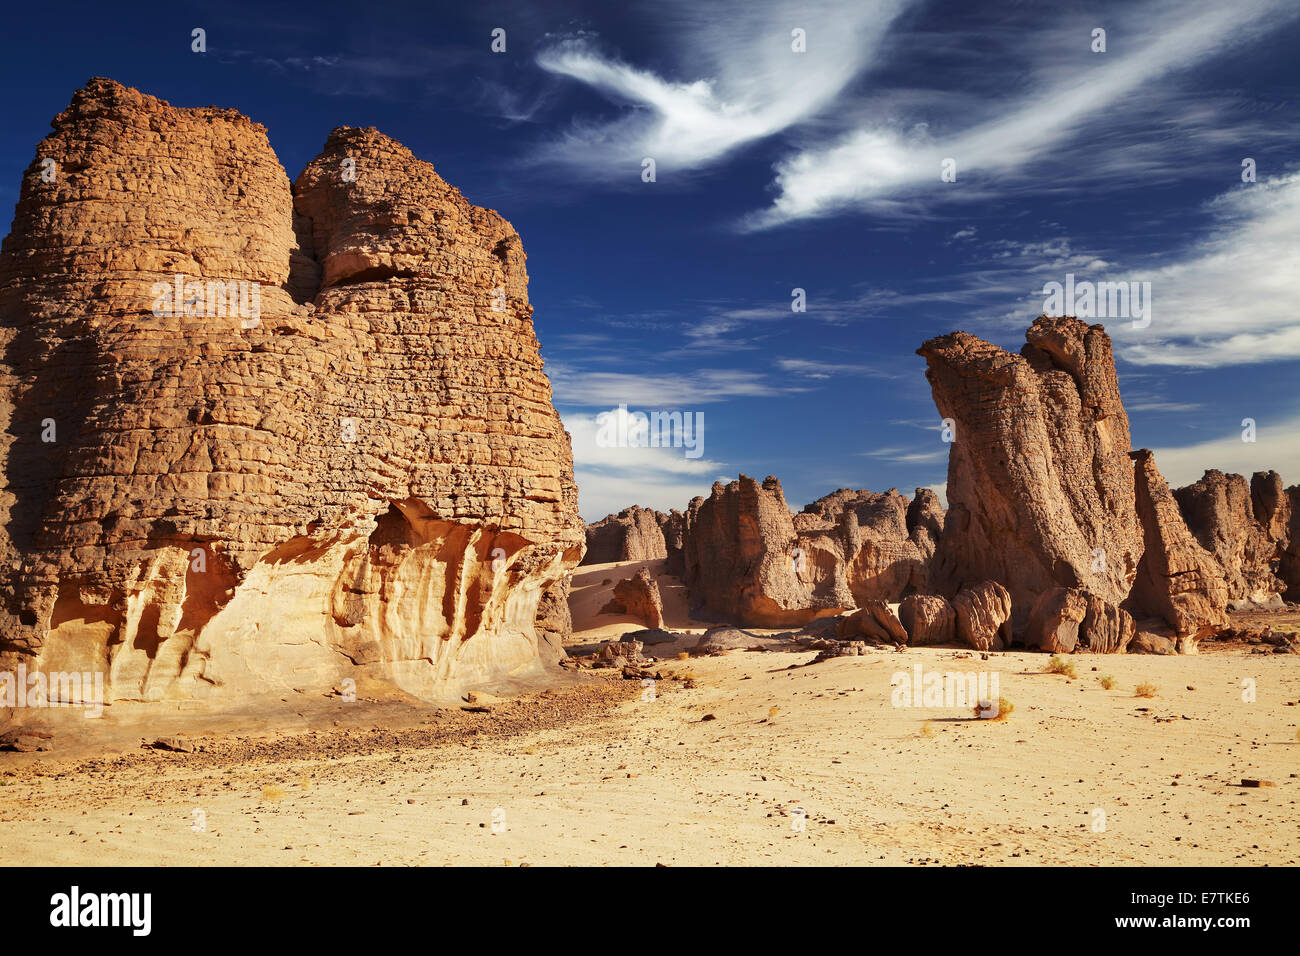 Dans les falaises de grès du désert du Sahara, Tassili N'Ajjer, Algérie Banque D'Images